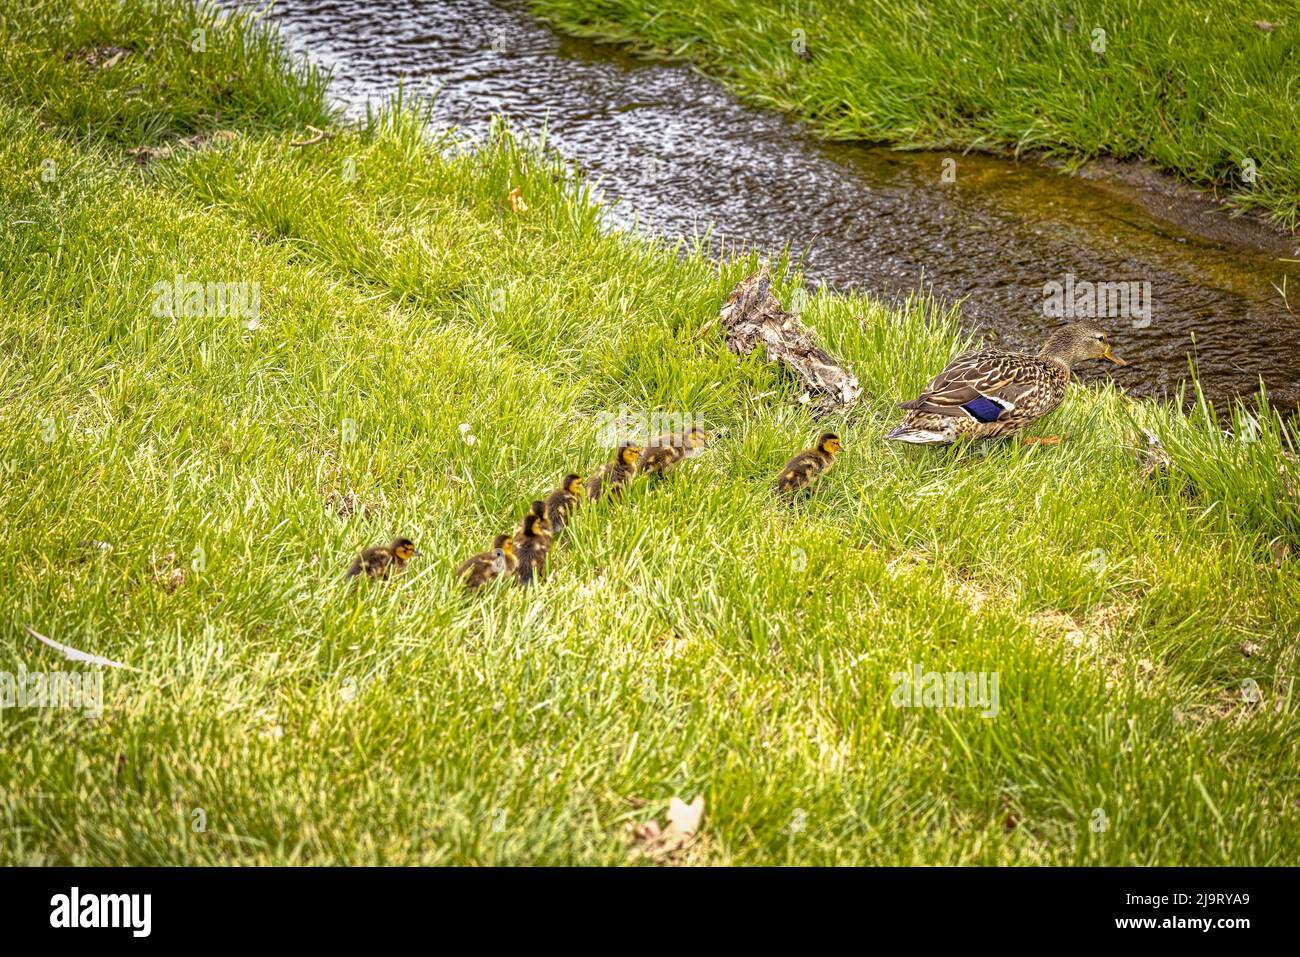 États-Unis, Colorado, ft. Collins. Femelle de canard adulte avec gaines. Banque D'Images